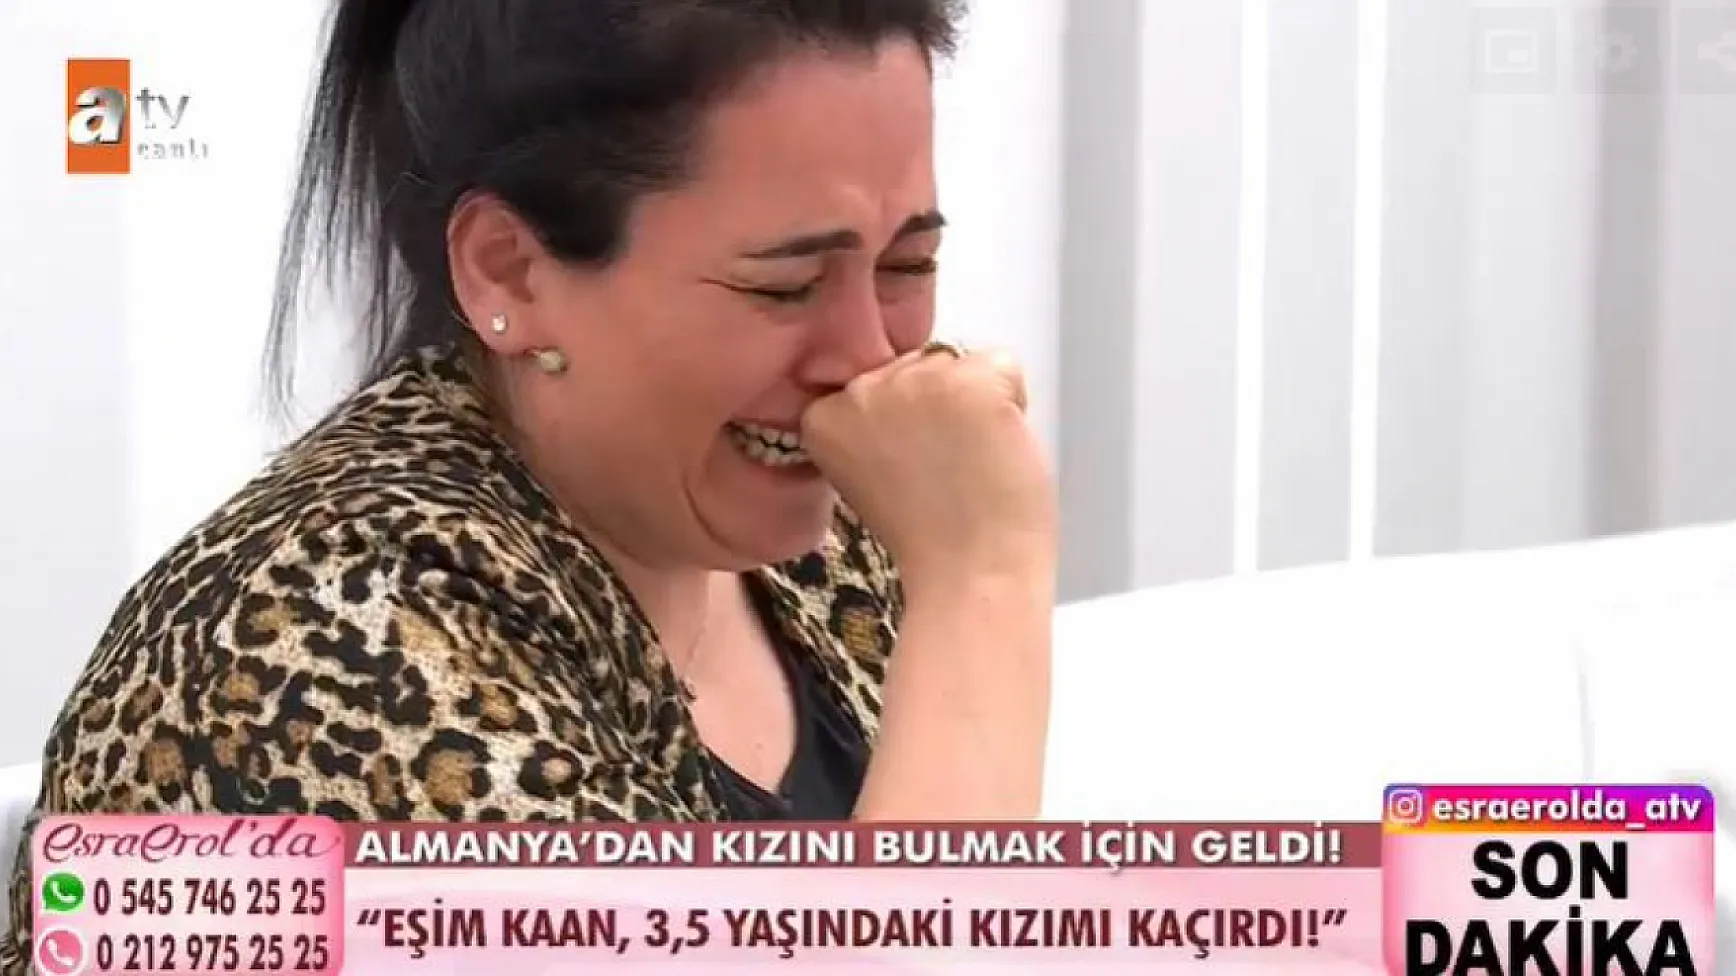 Boşandığı Eşi Kızını Almanya'dan Türkiye'ye Kaçırdı Kızını Bulmak İçin Esra Erol'a Çıktı